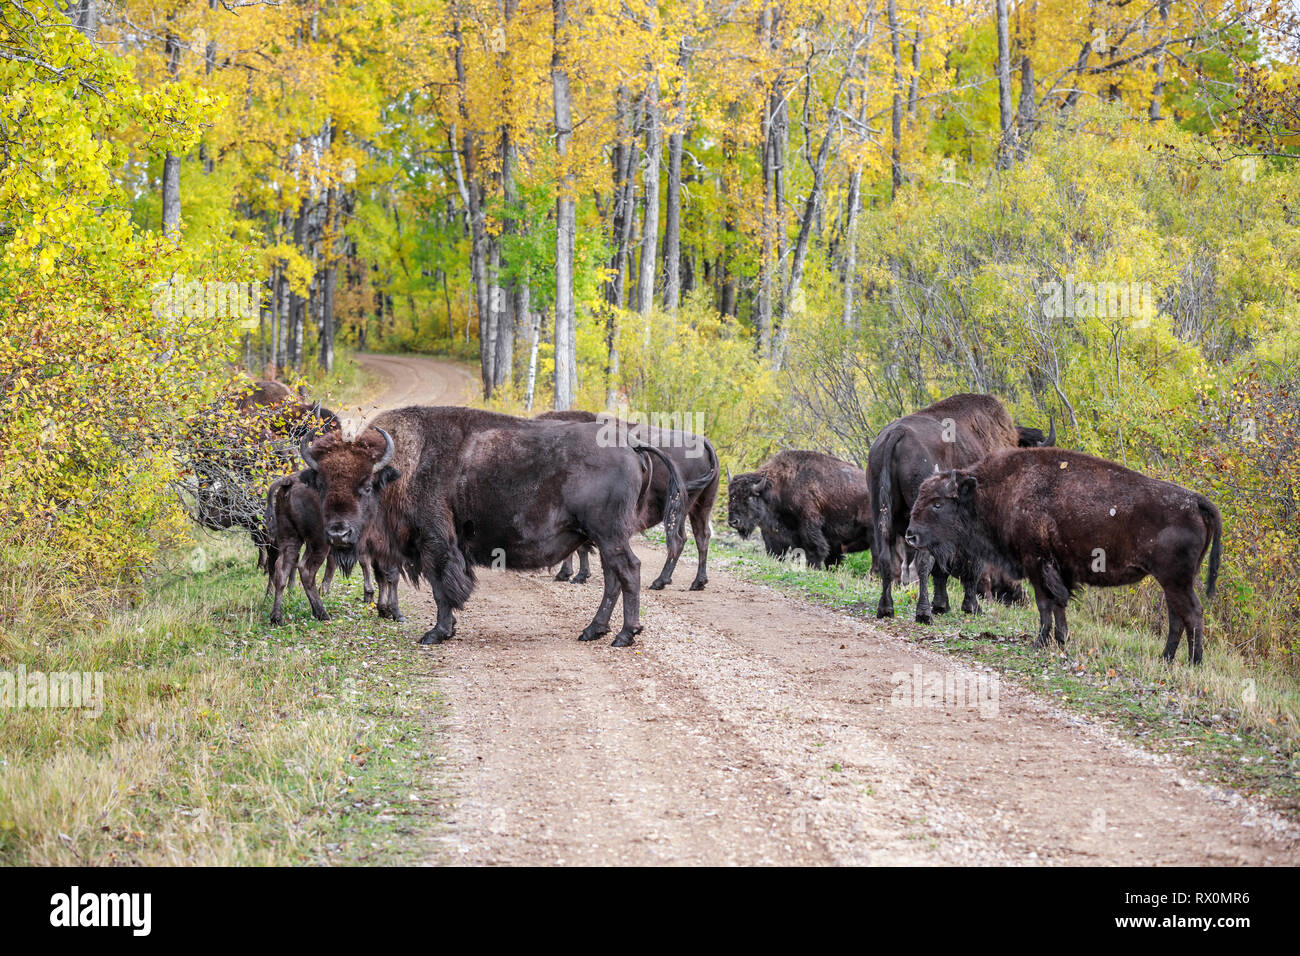 Las llanuras de la manada de bisontes, de pie en la carretera en colores de otoño, Cabalgatas Mountain National Park, Manitoba, Canadá. Foto de stock